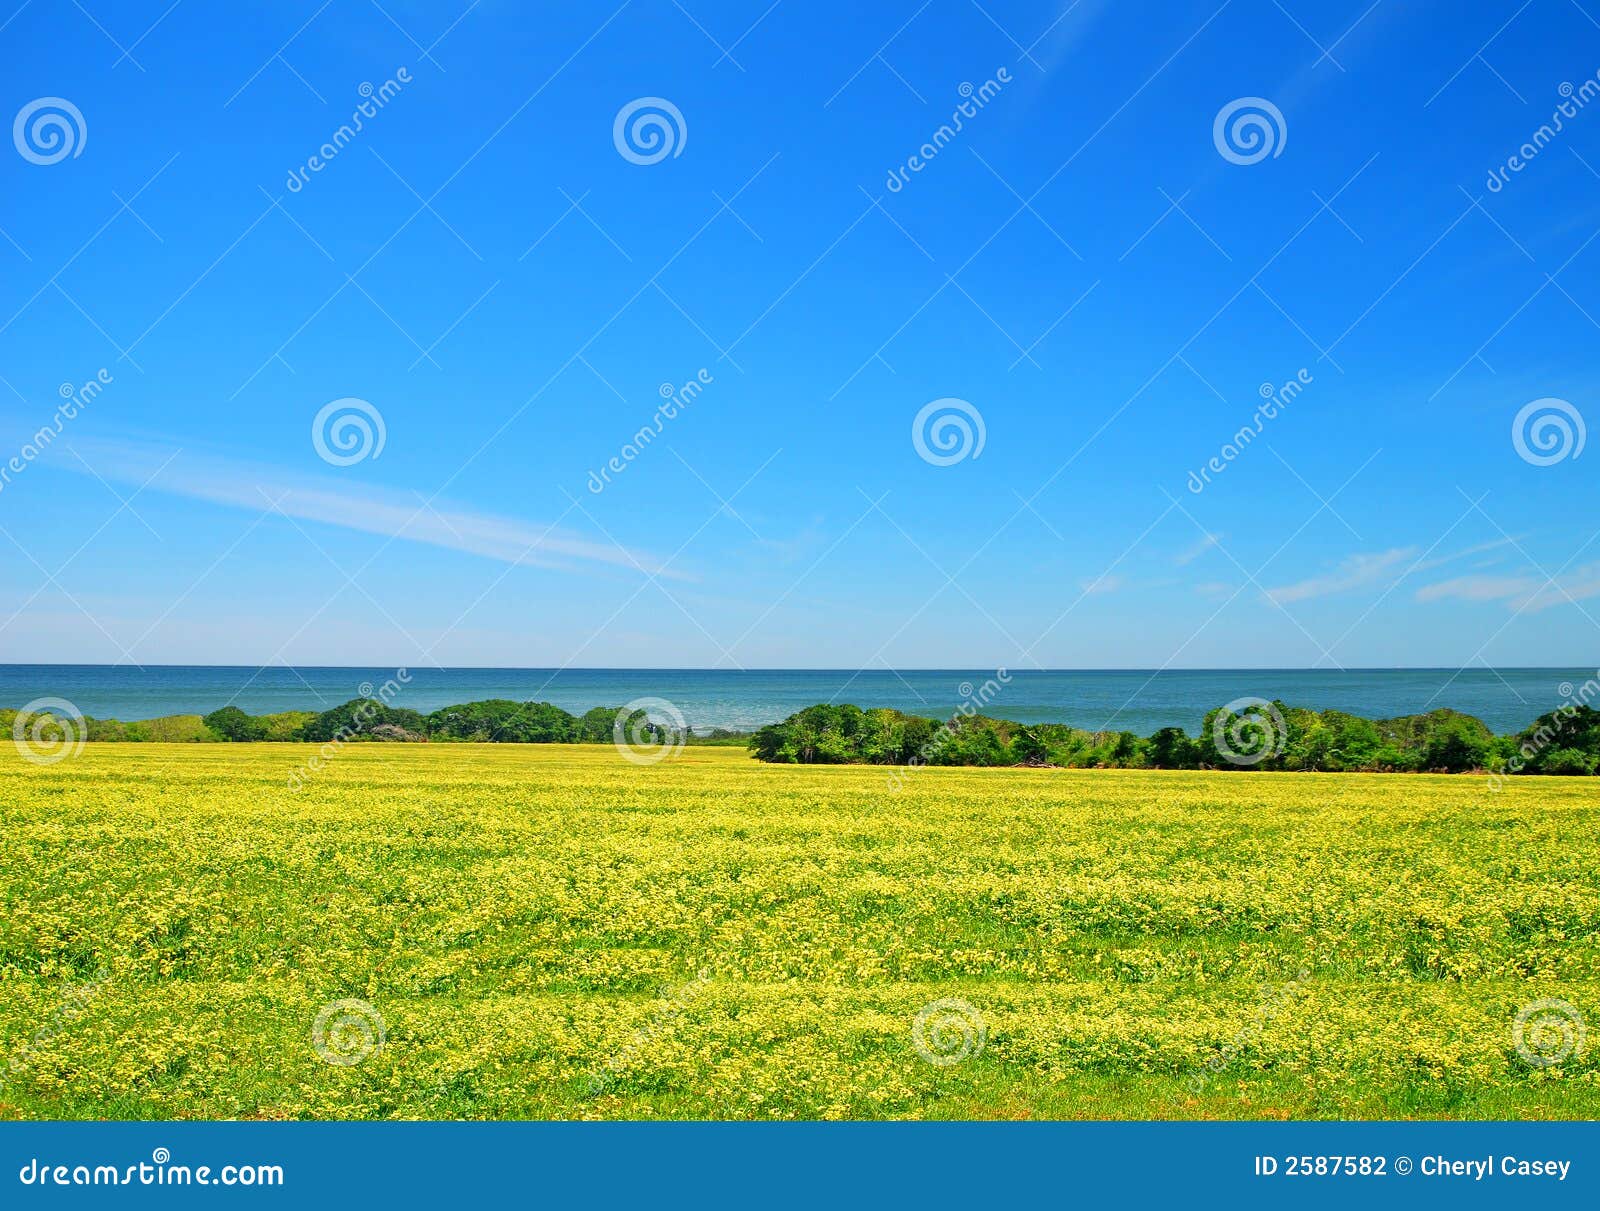 seaside meadow